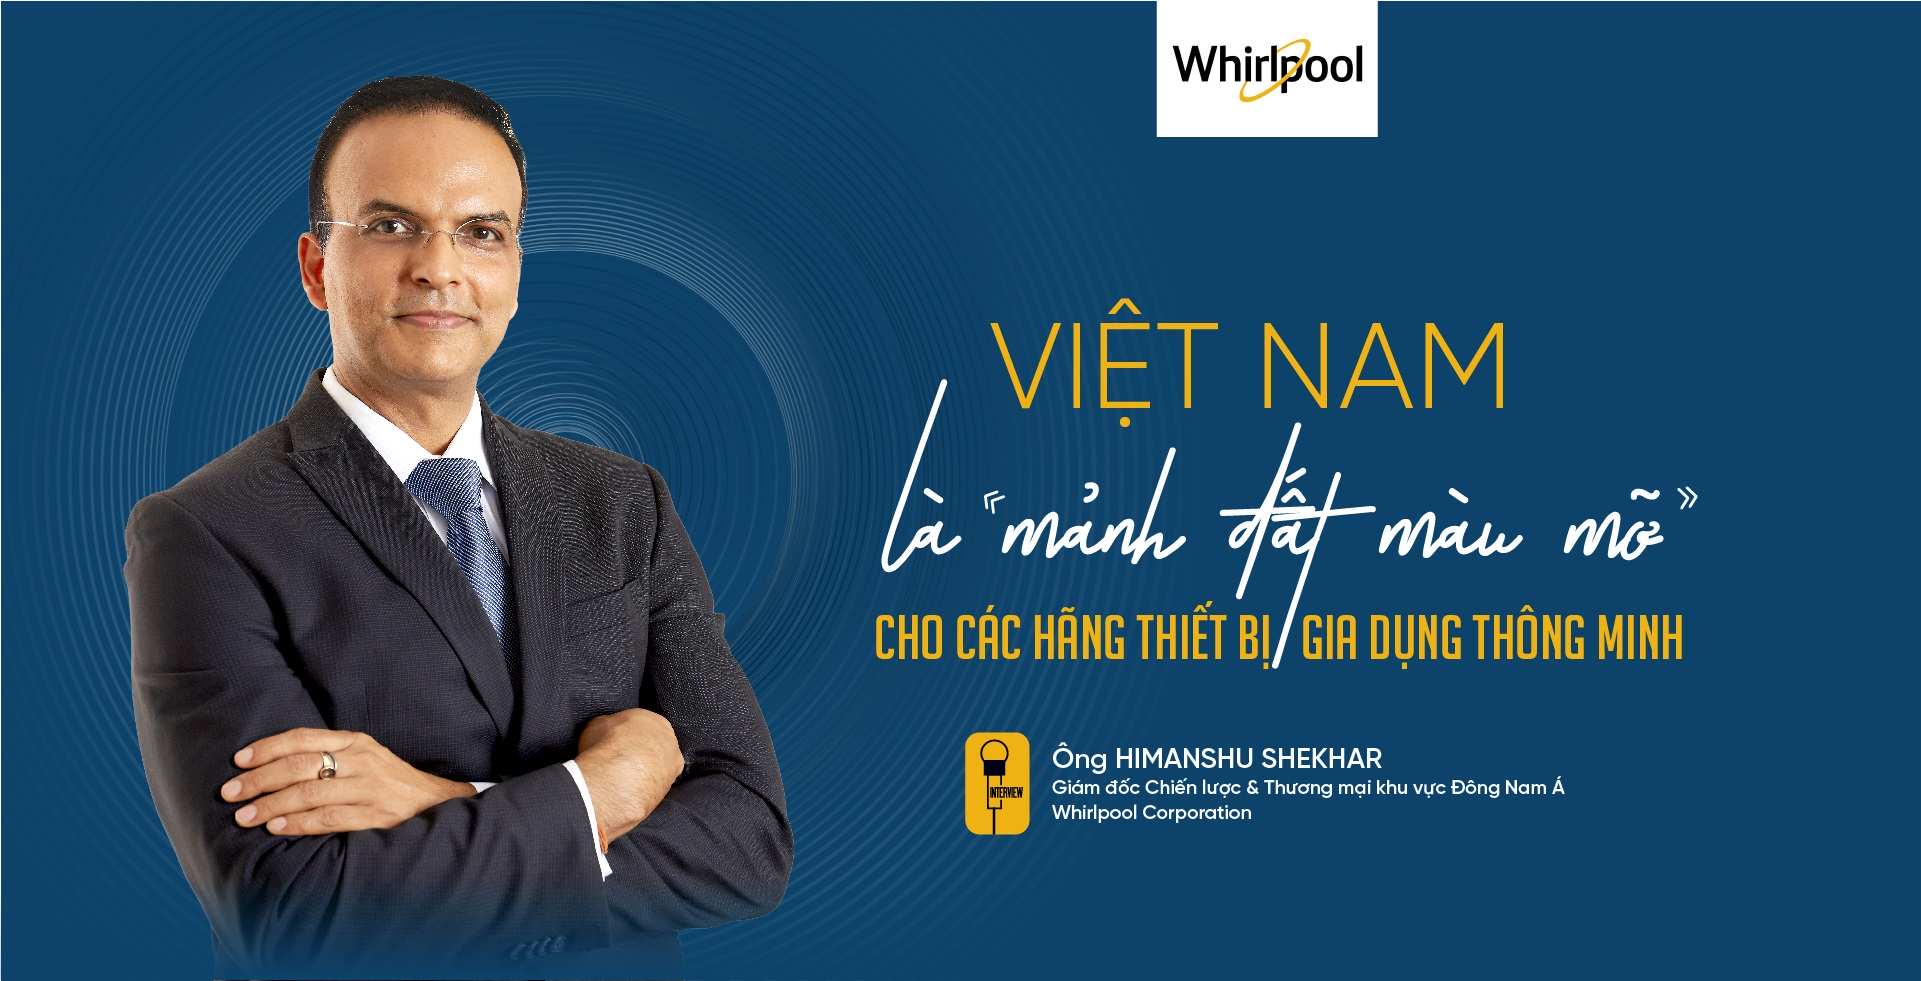 Việt Nam là mảnh đất màu mỡ cho các hãng thiết bị gia dụng thông minh